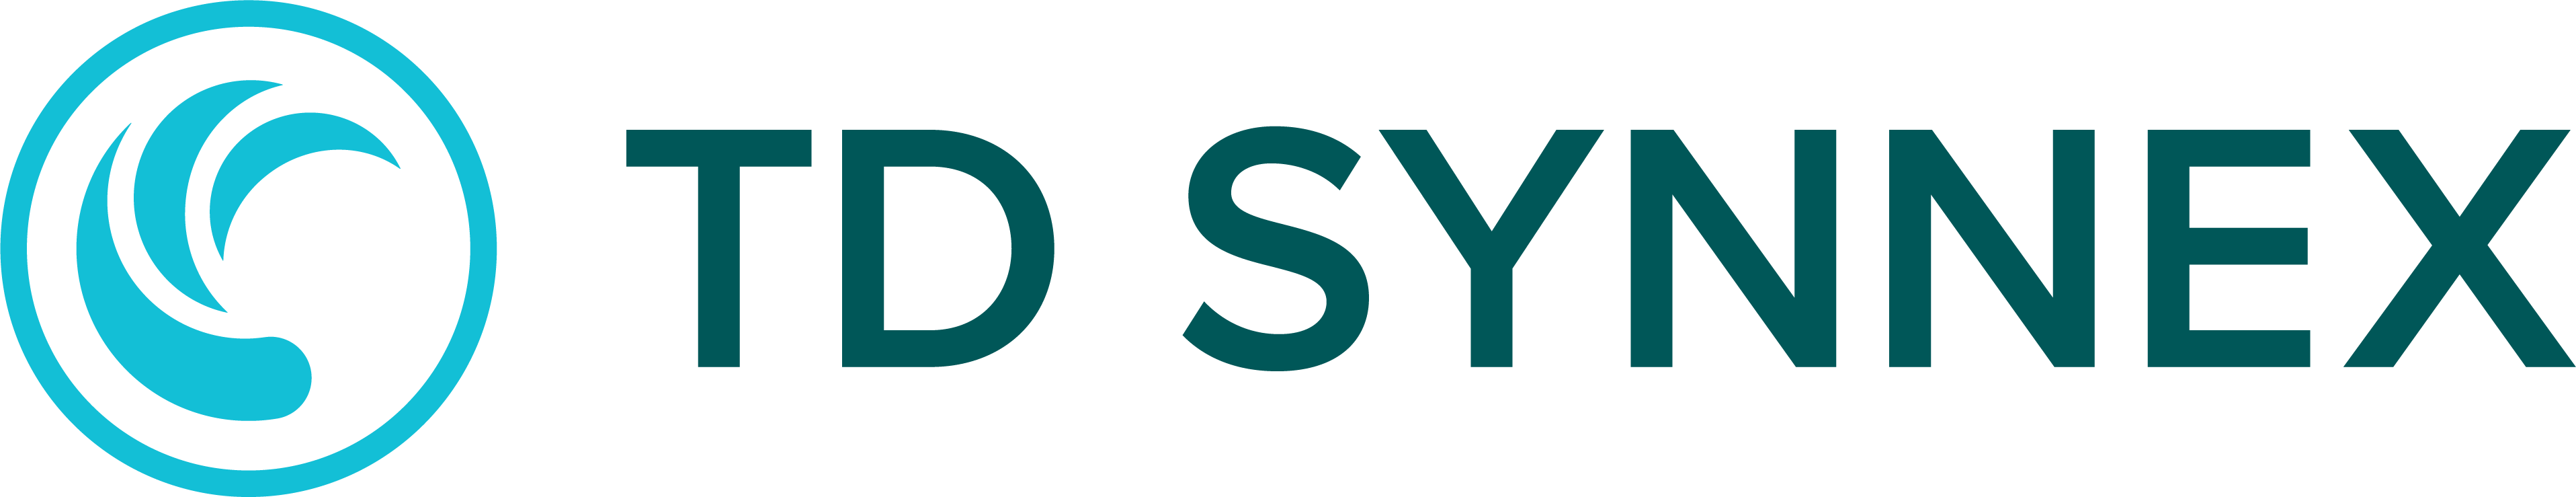 TD SYNNEX_Logo_Color_RGB